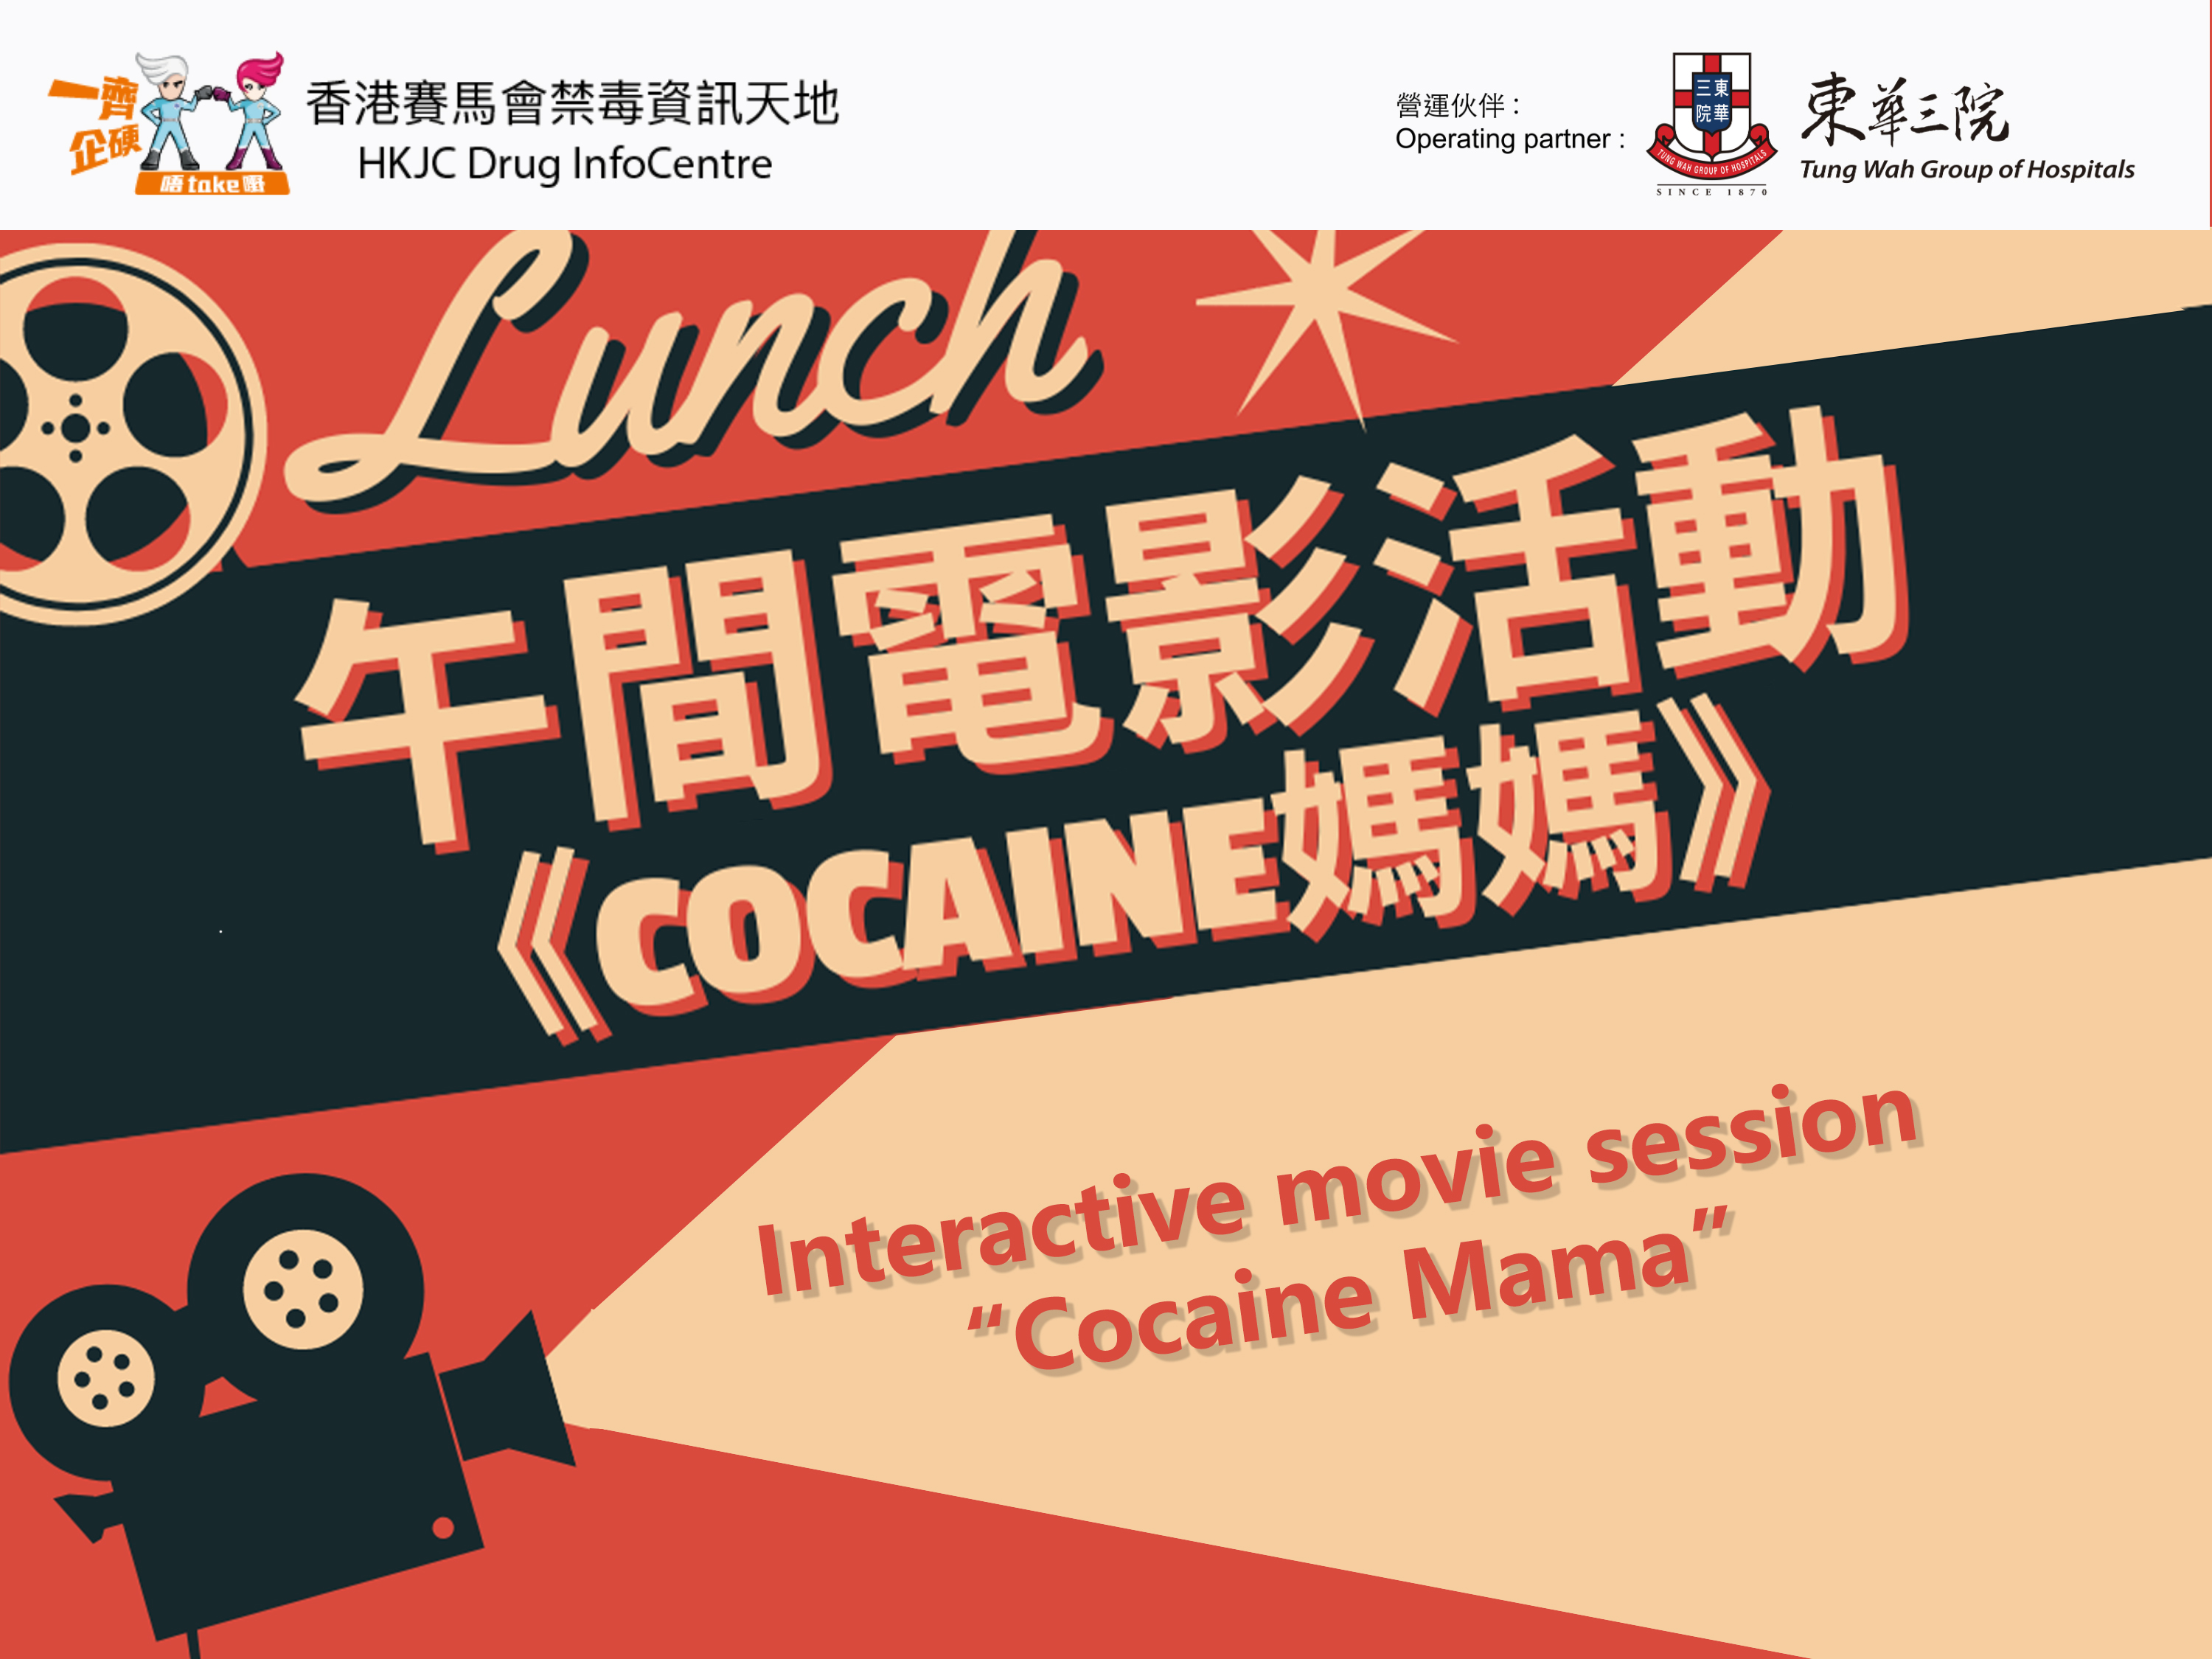 午間電影活動 —《Cocaine媽媽》